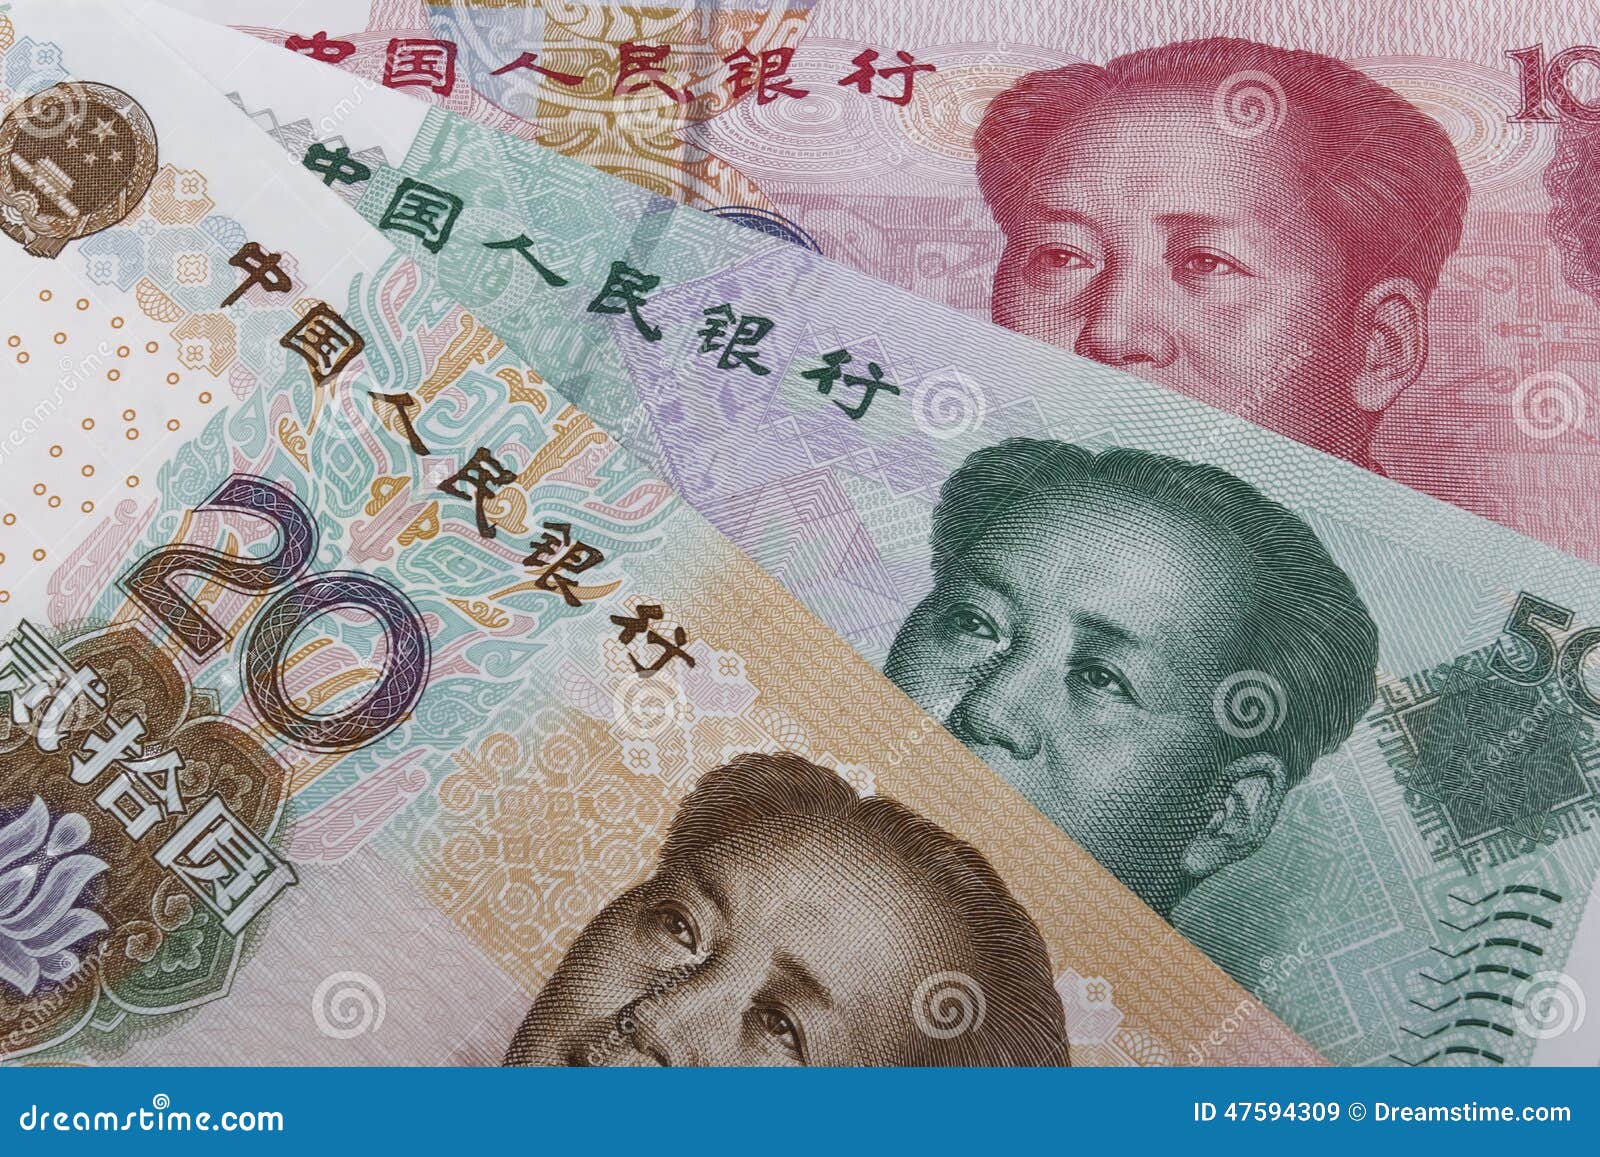 Китайские деньги в рублях перевести. Китайские деньги. Валюта Китая. Китайский юань. Банкноты Китая.